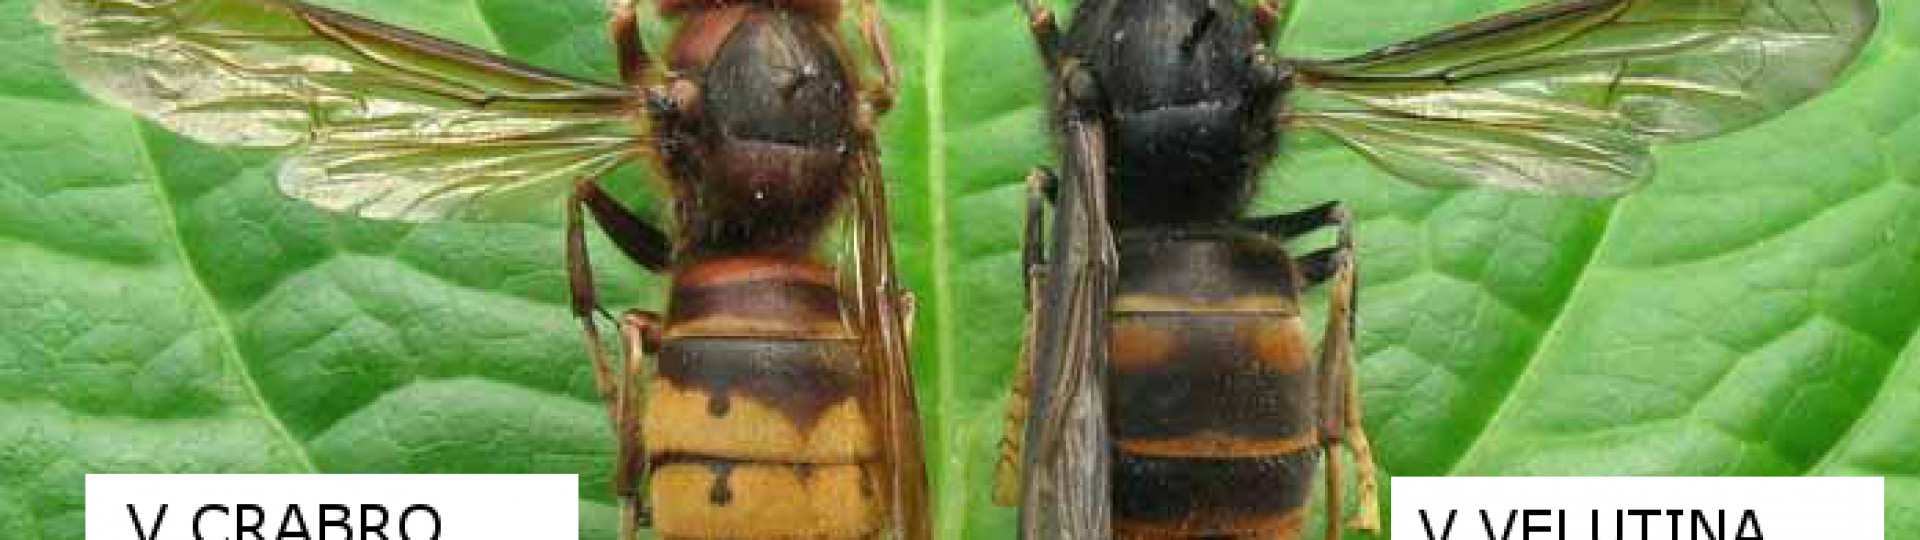 Foto differenze vespa velutina e calabrone italiano